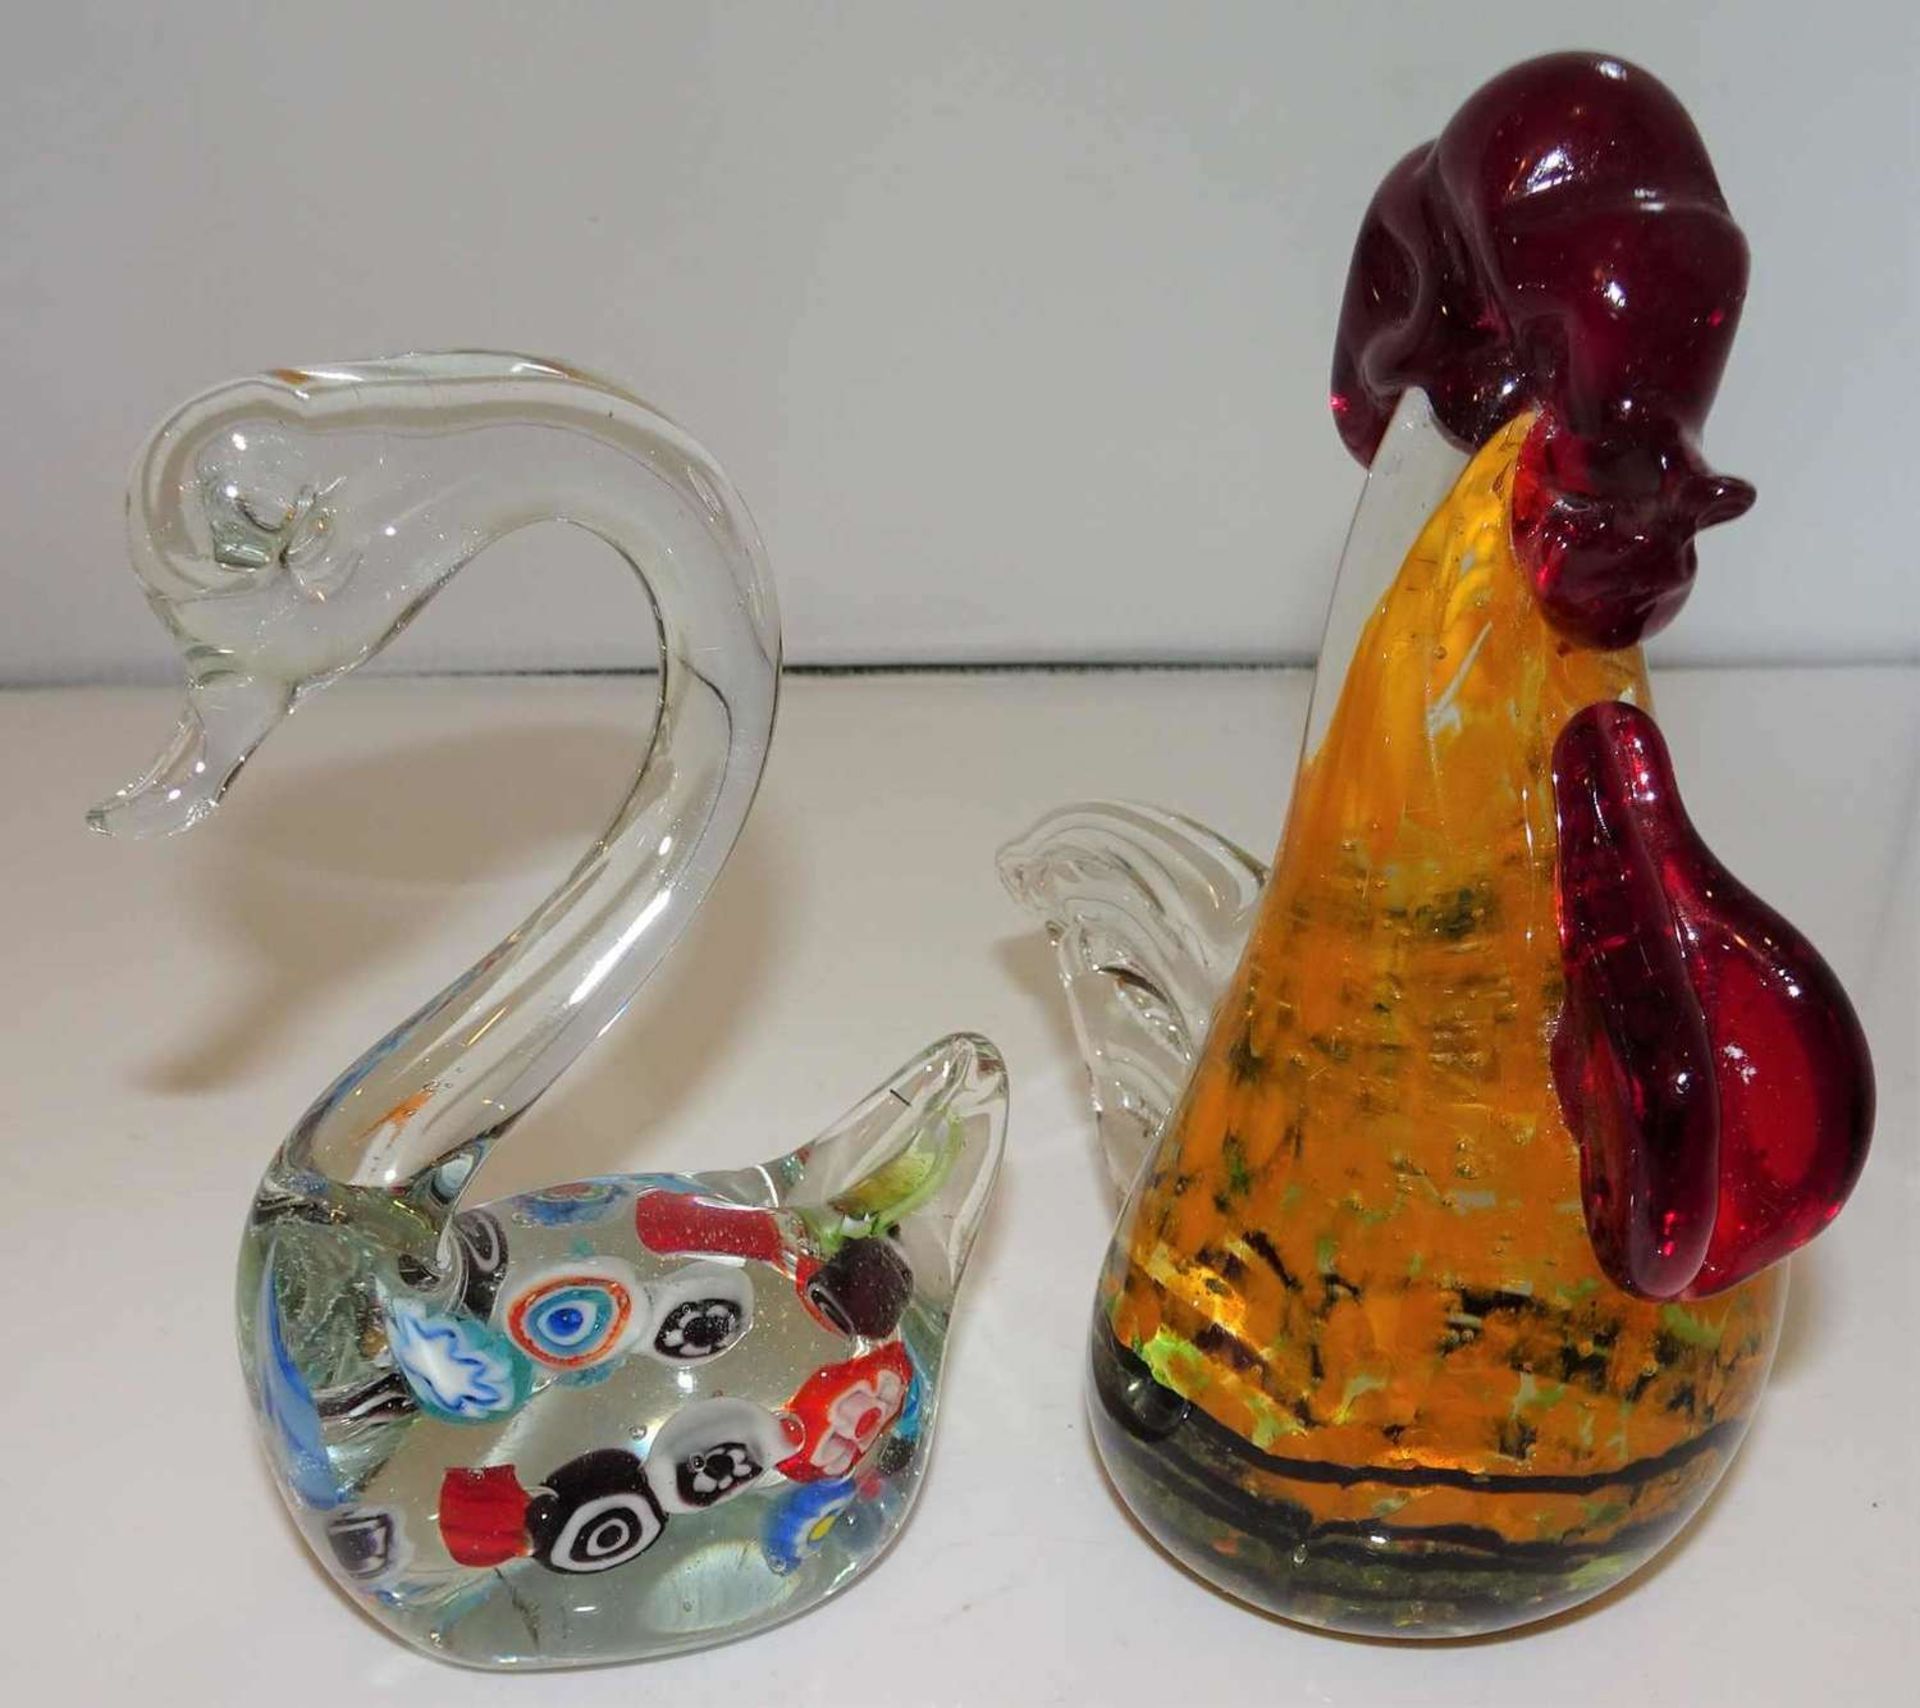 2 Murano Glasfiguren, 1 Schwan mit Murinen, sowie 1 Hahn. 2 Murano glass figures, 1 swan with